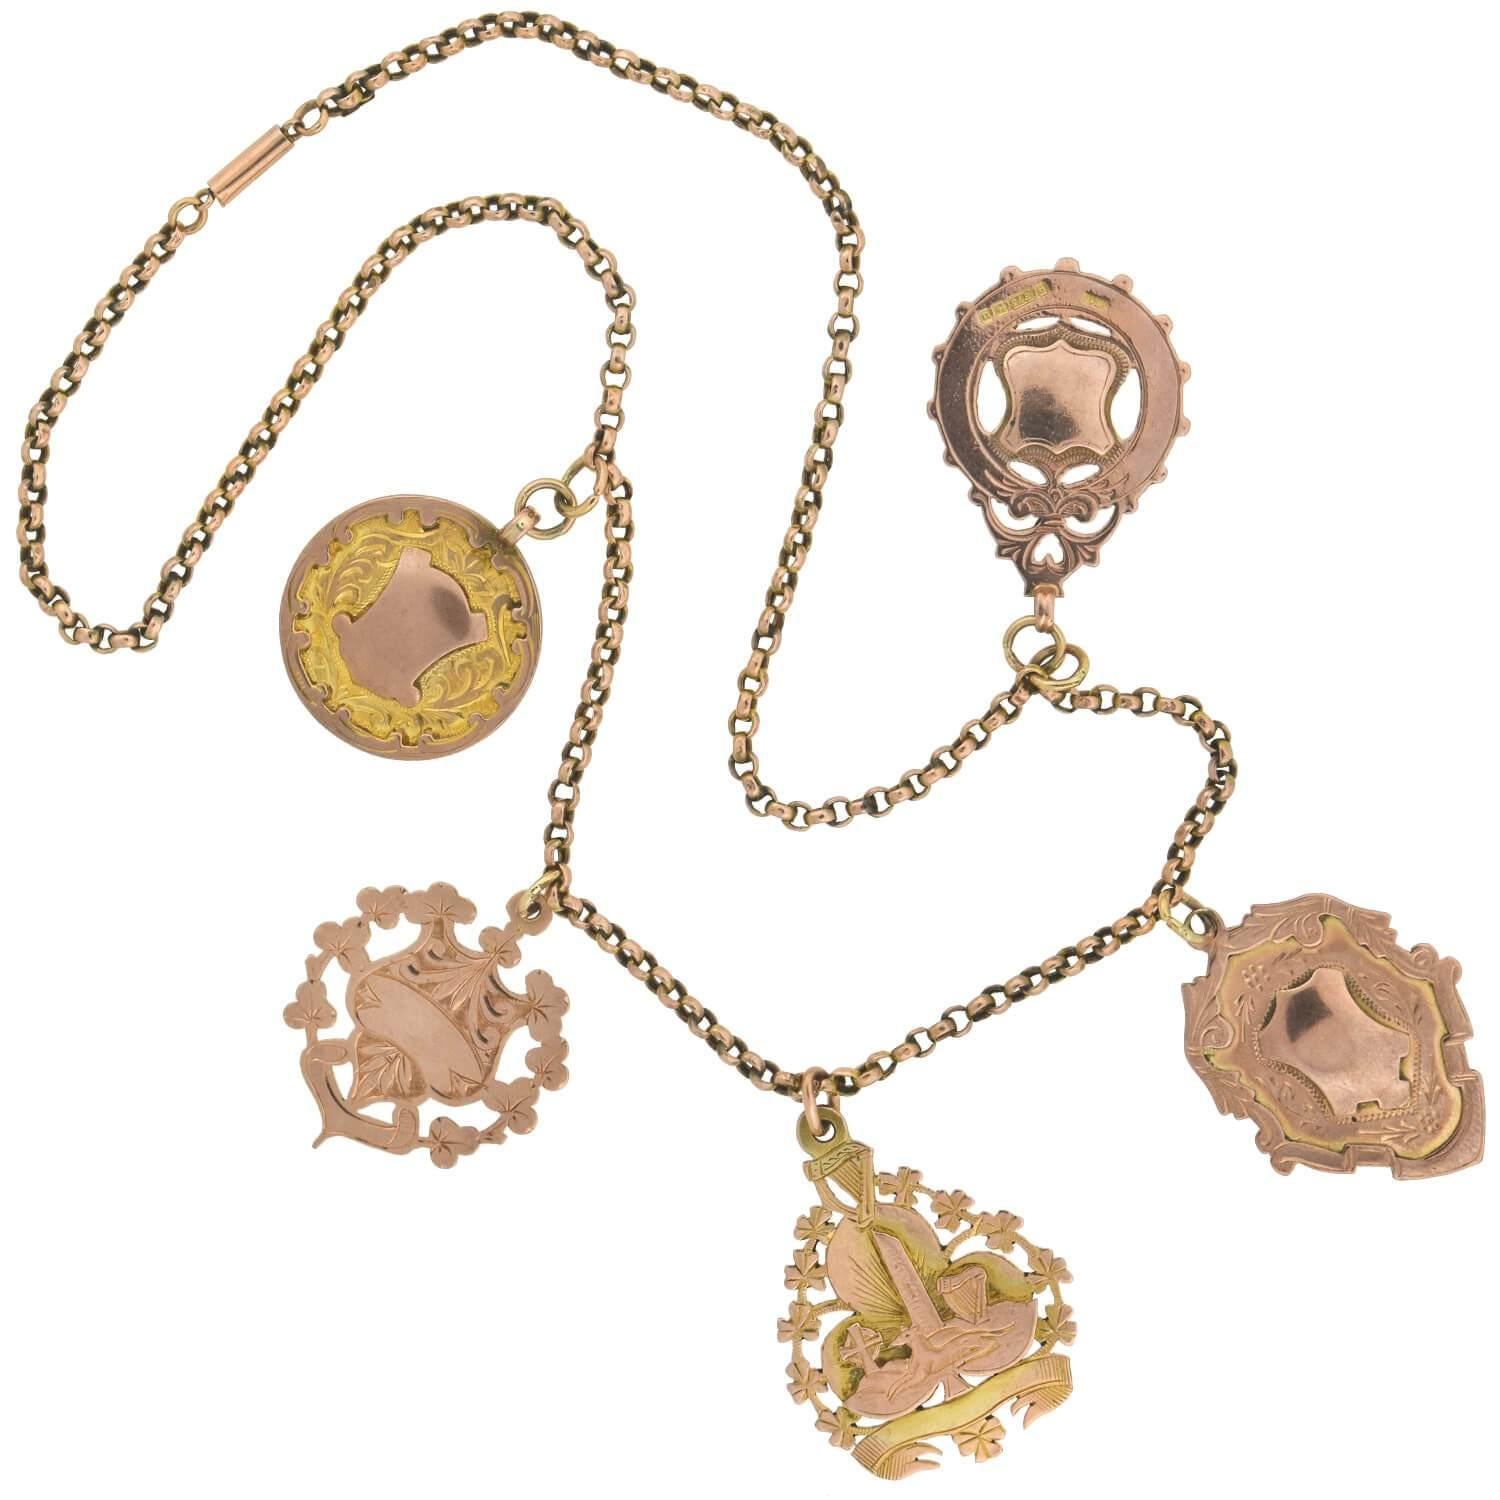 Un collier médaillon étonnant et audacieux avec des pièces de l'époque victorienne (ca1880s) ! Cette jolie pièce de compilation est fabriquée en or rose 9kt et ornée de 5 belles et authentiques médailles suspendues au centre d'une belle chaîne.